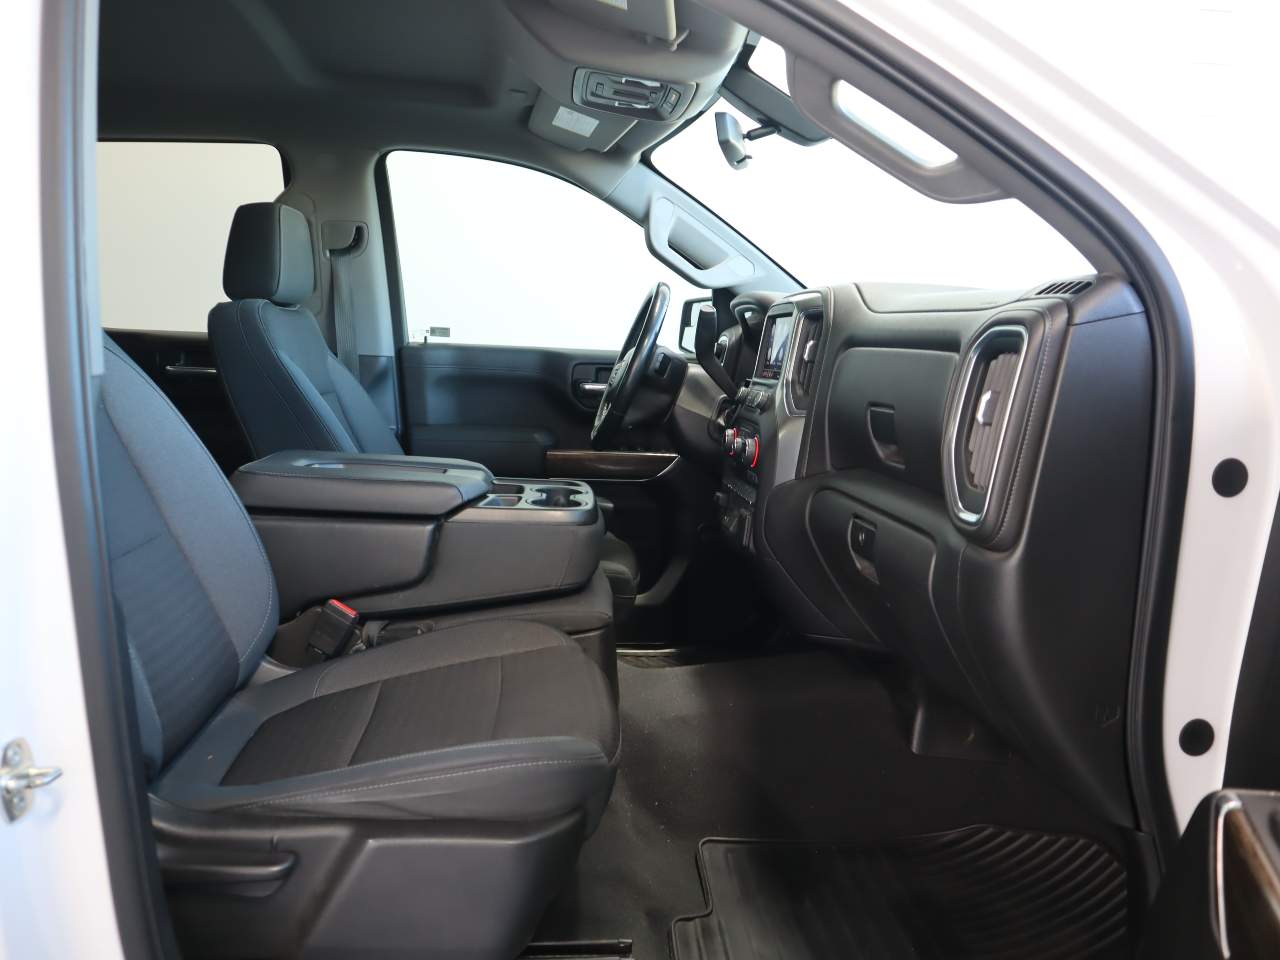 2019 Chevrolet Silverado 1500 LT Crew Cab